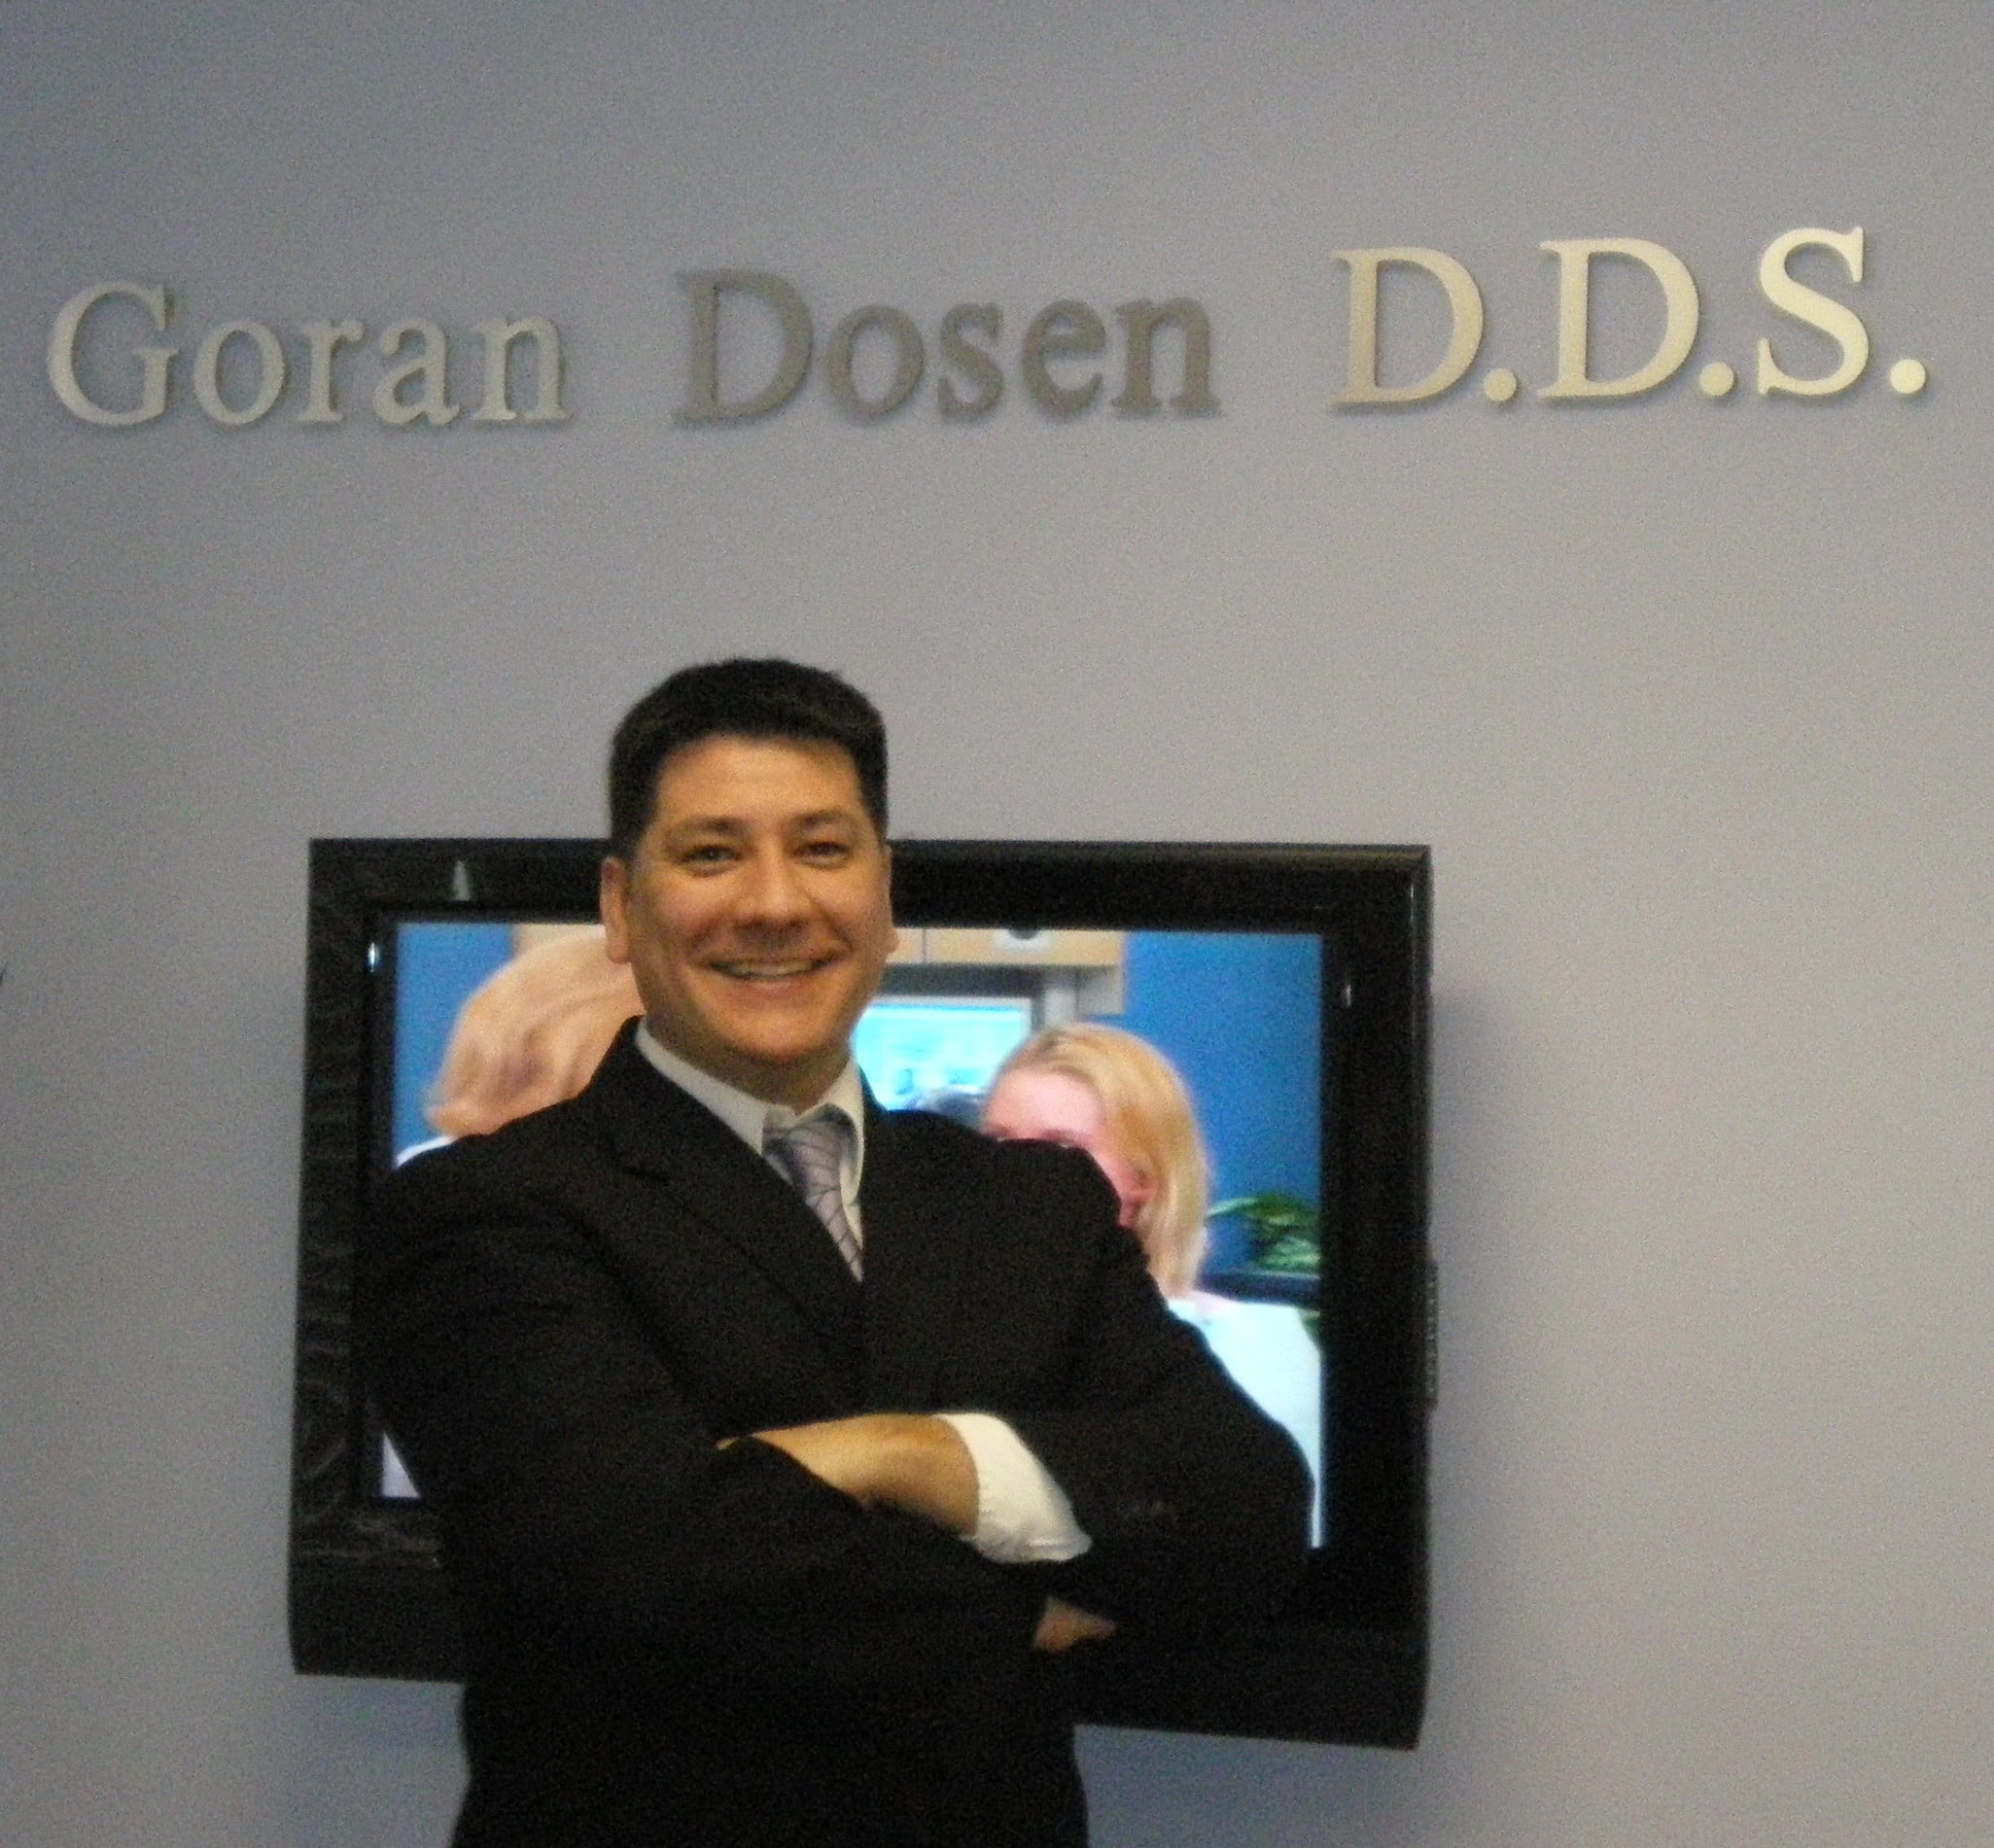 Dr. Goran Dosen